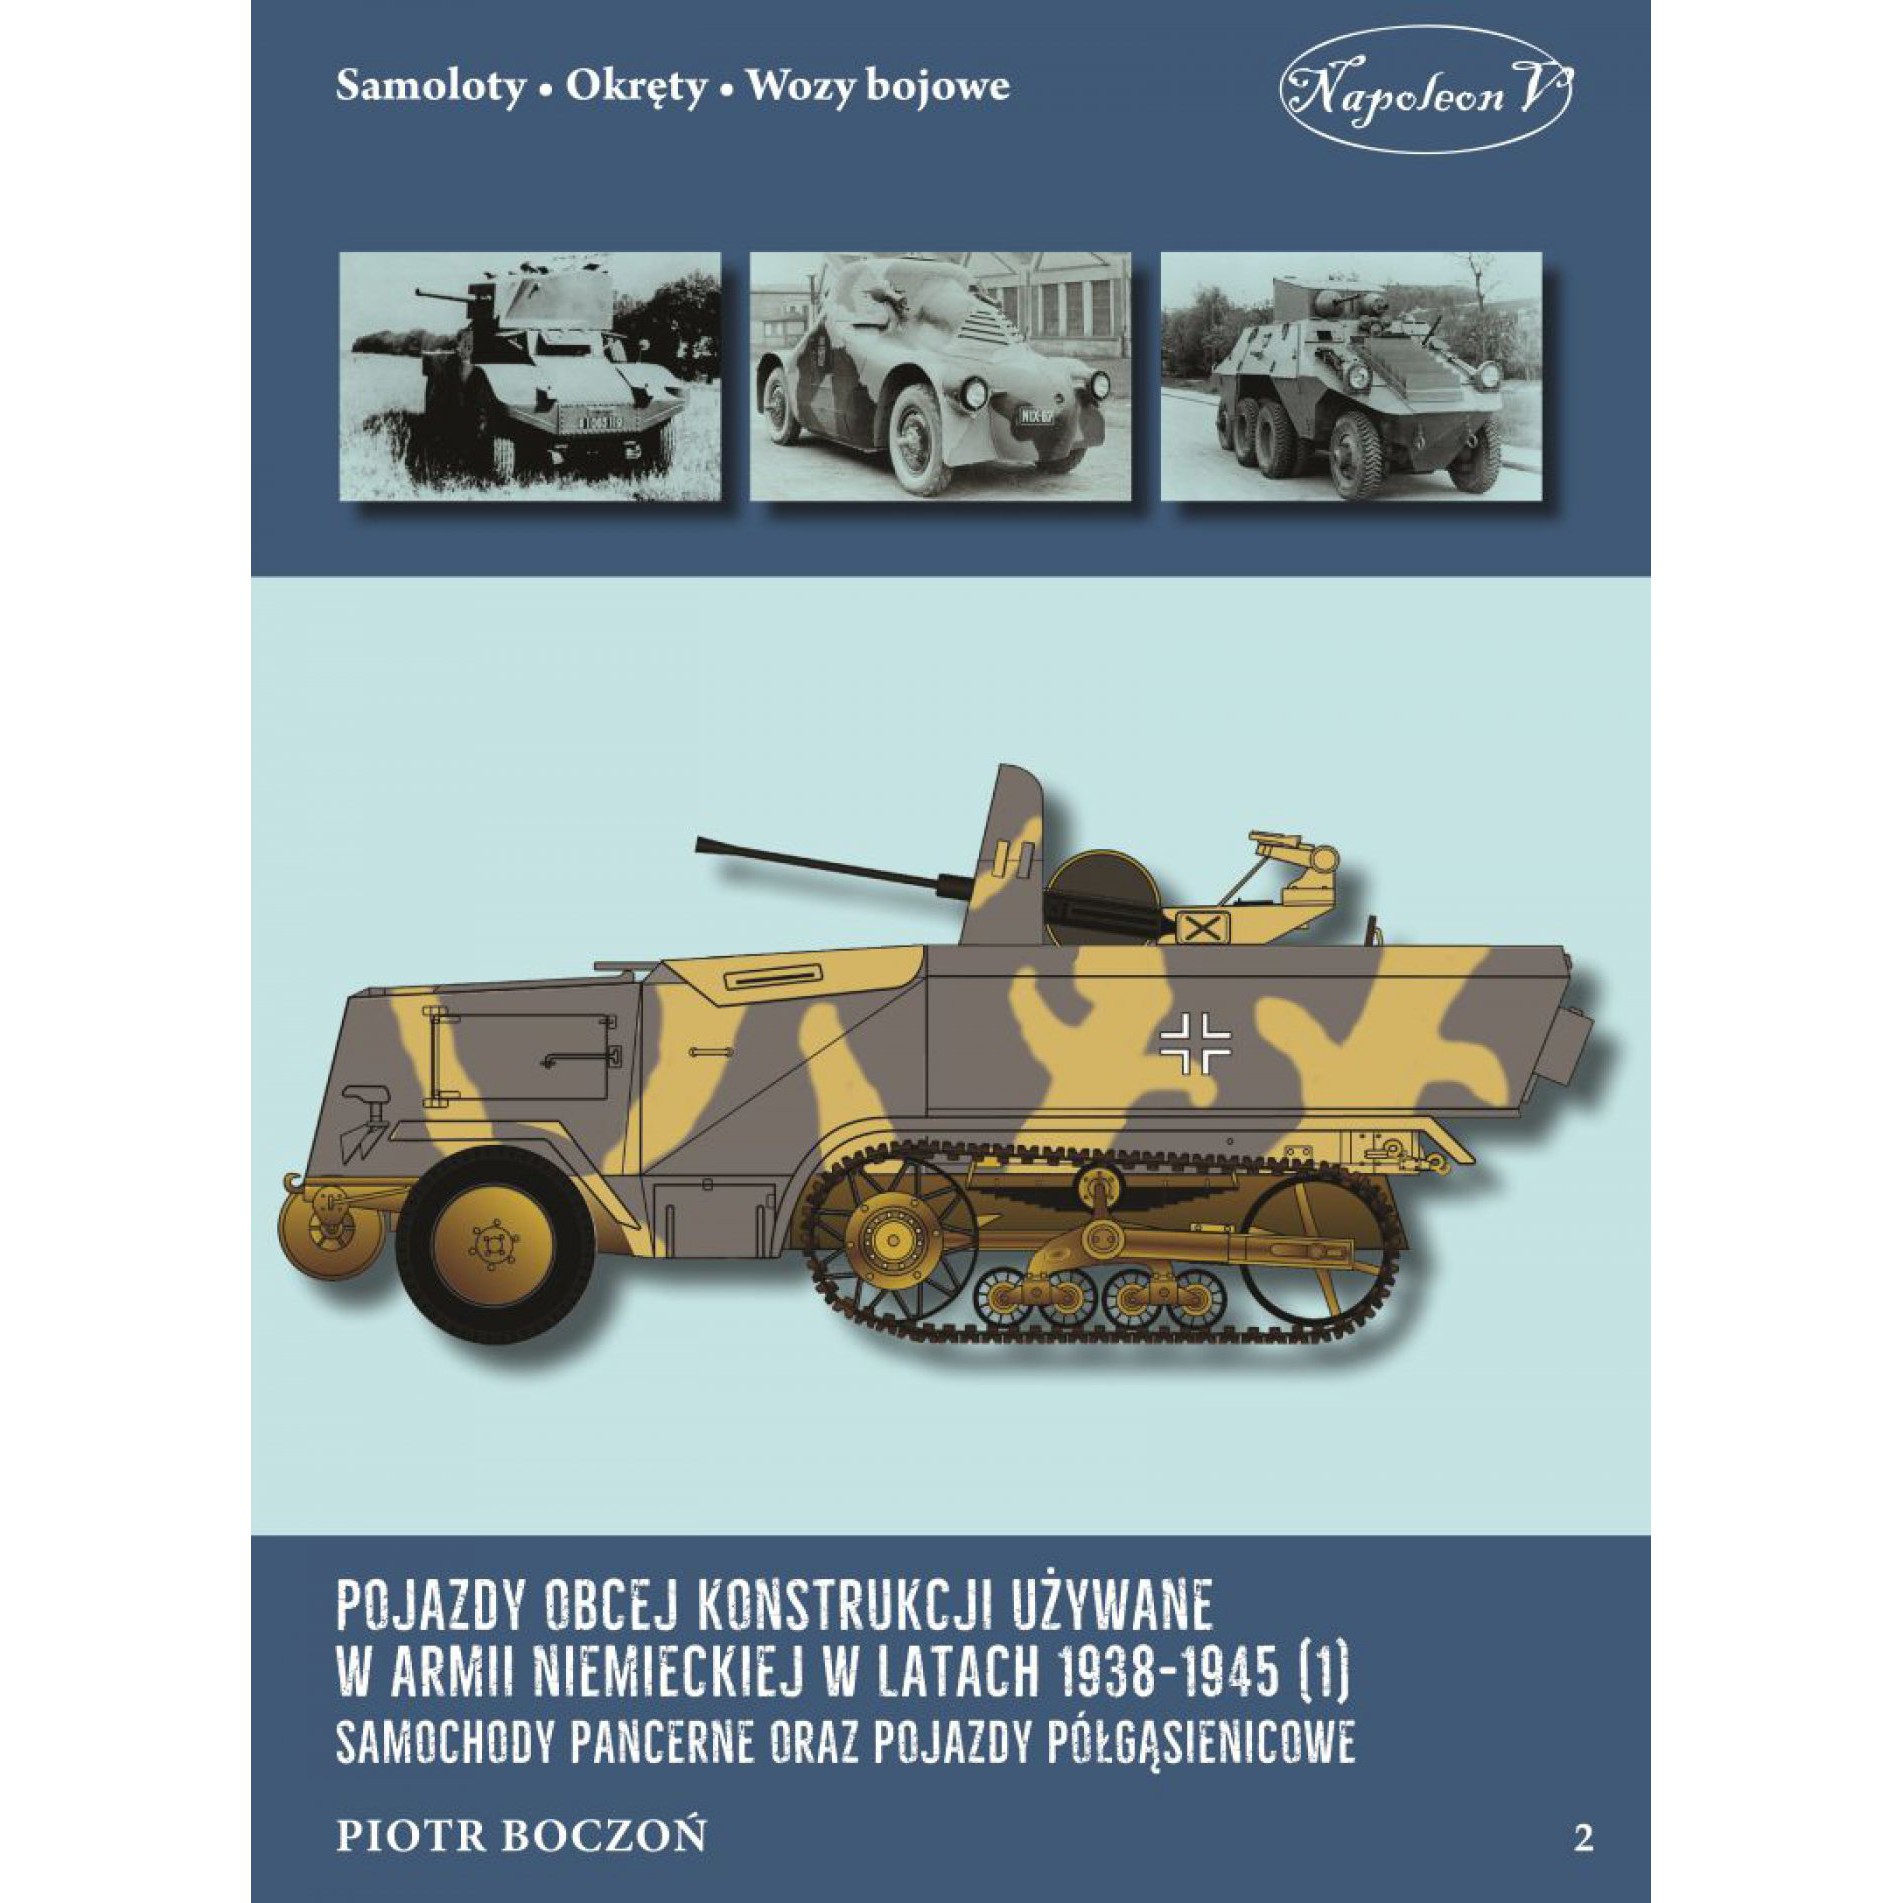 Pojazdy obcej konstrukcji używane w armii niemieckiej w latach 1938-1945 (1) Samochody pancerne oraz pojazdy półgąsienicowe